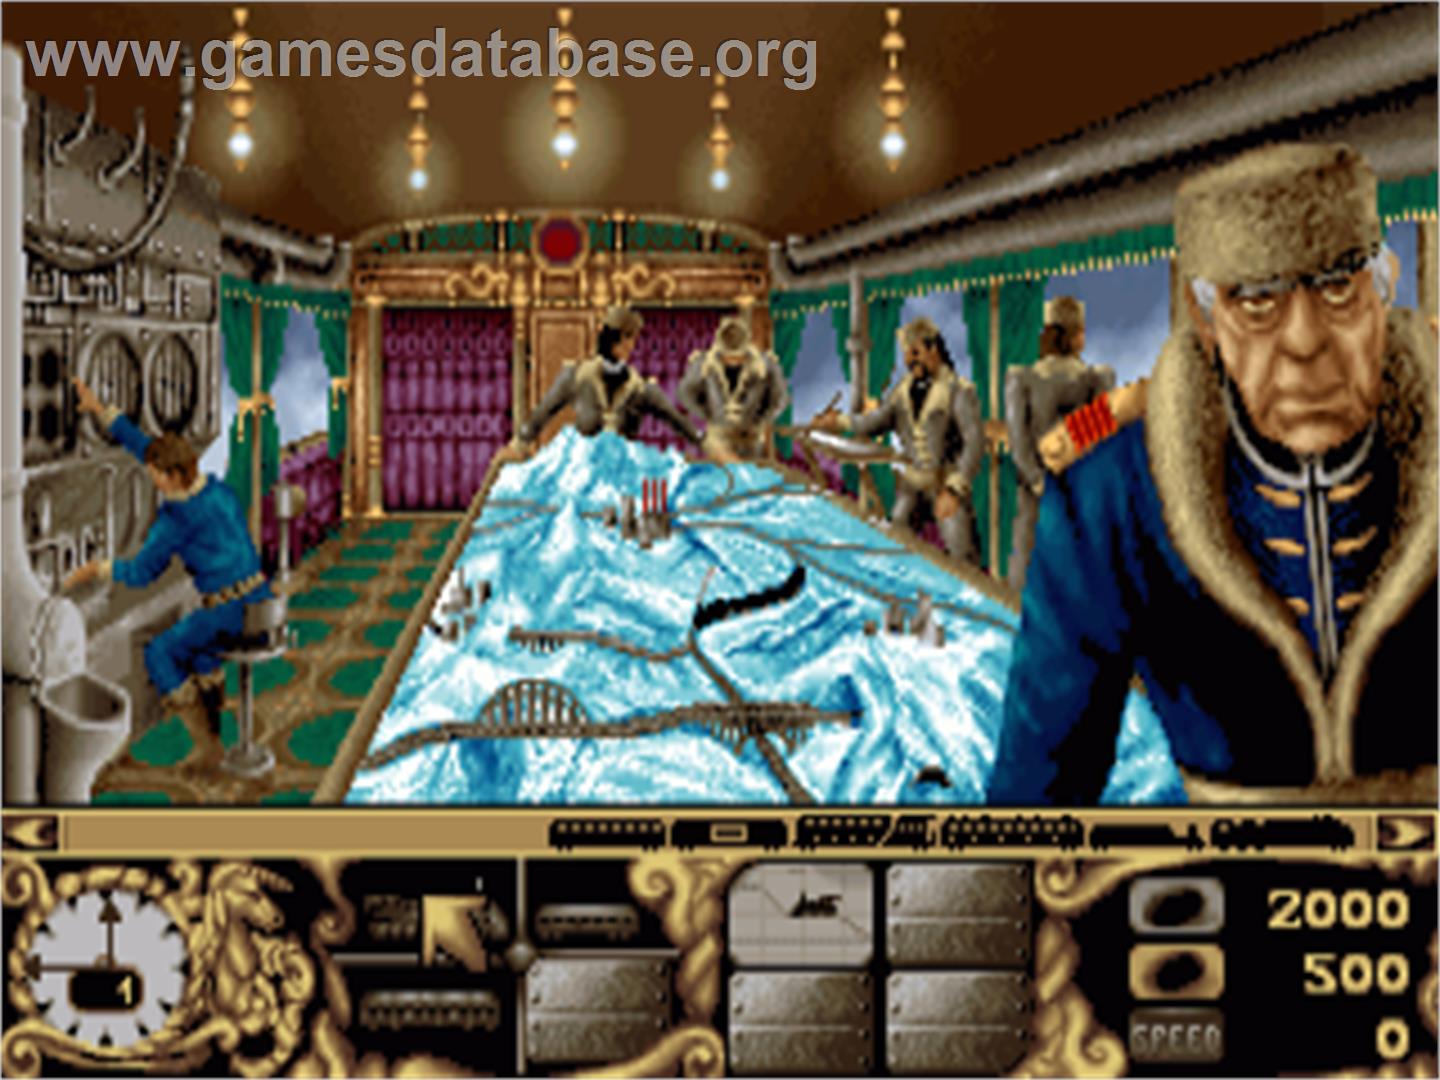 Transarctica - Commodore Amiga - Artwork - In Game